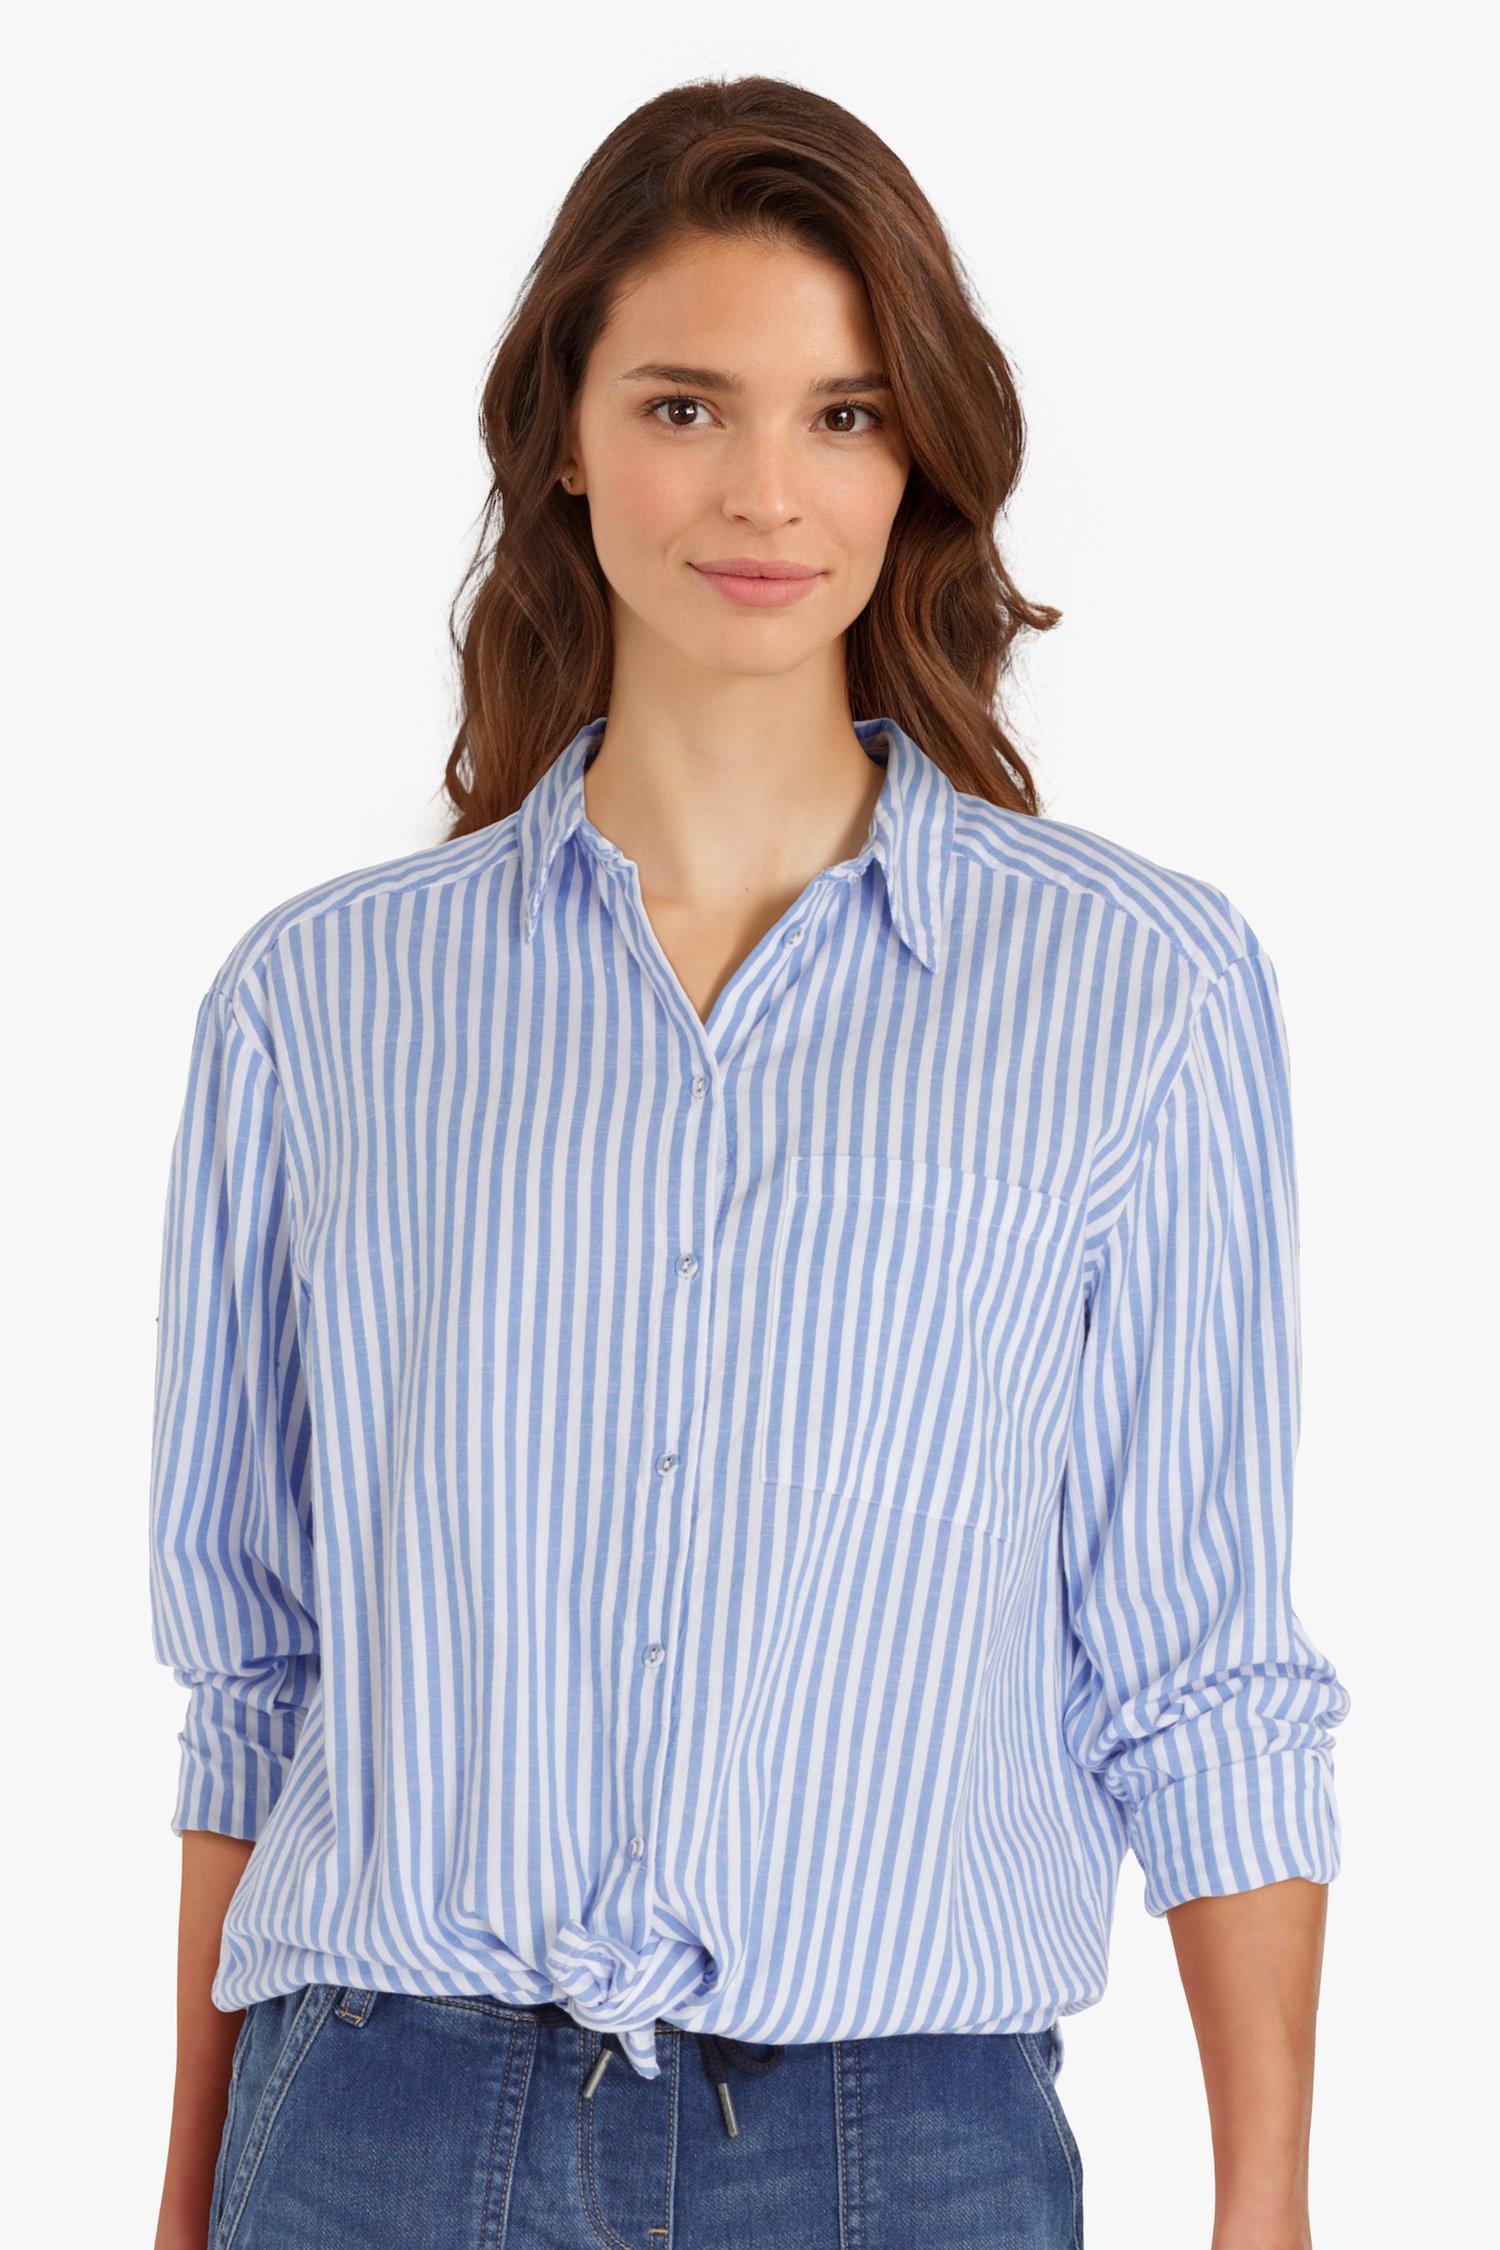 Vervolgen compact humor Lange blauw-wit gestreepte blouse van B. Coastline | 9622501 | e5